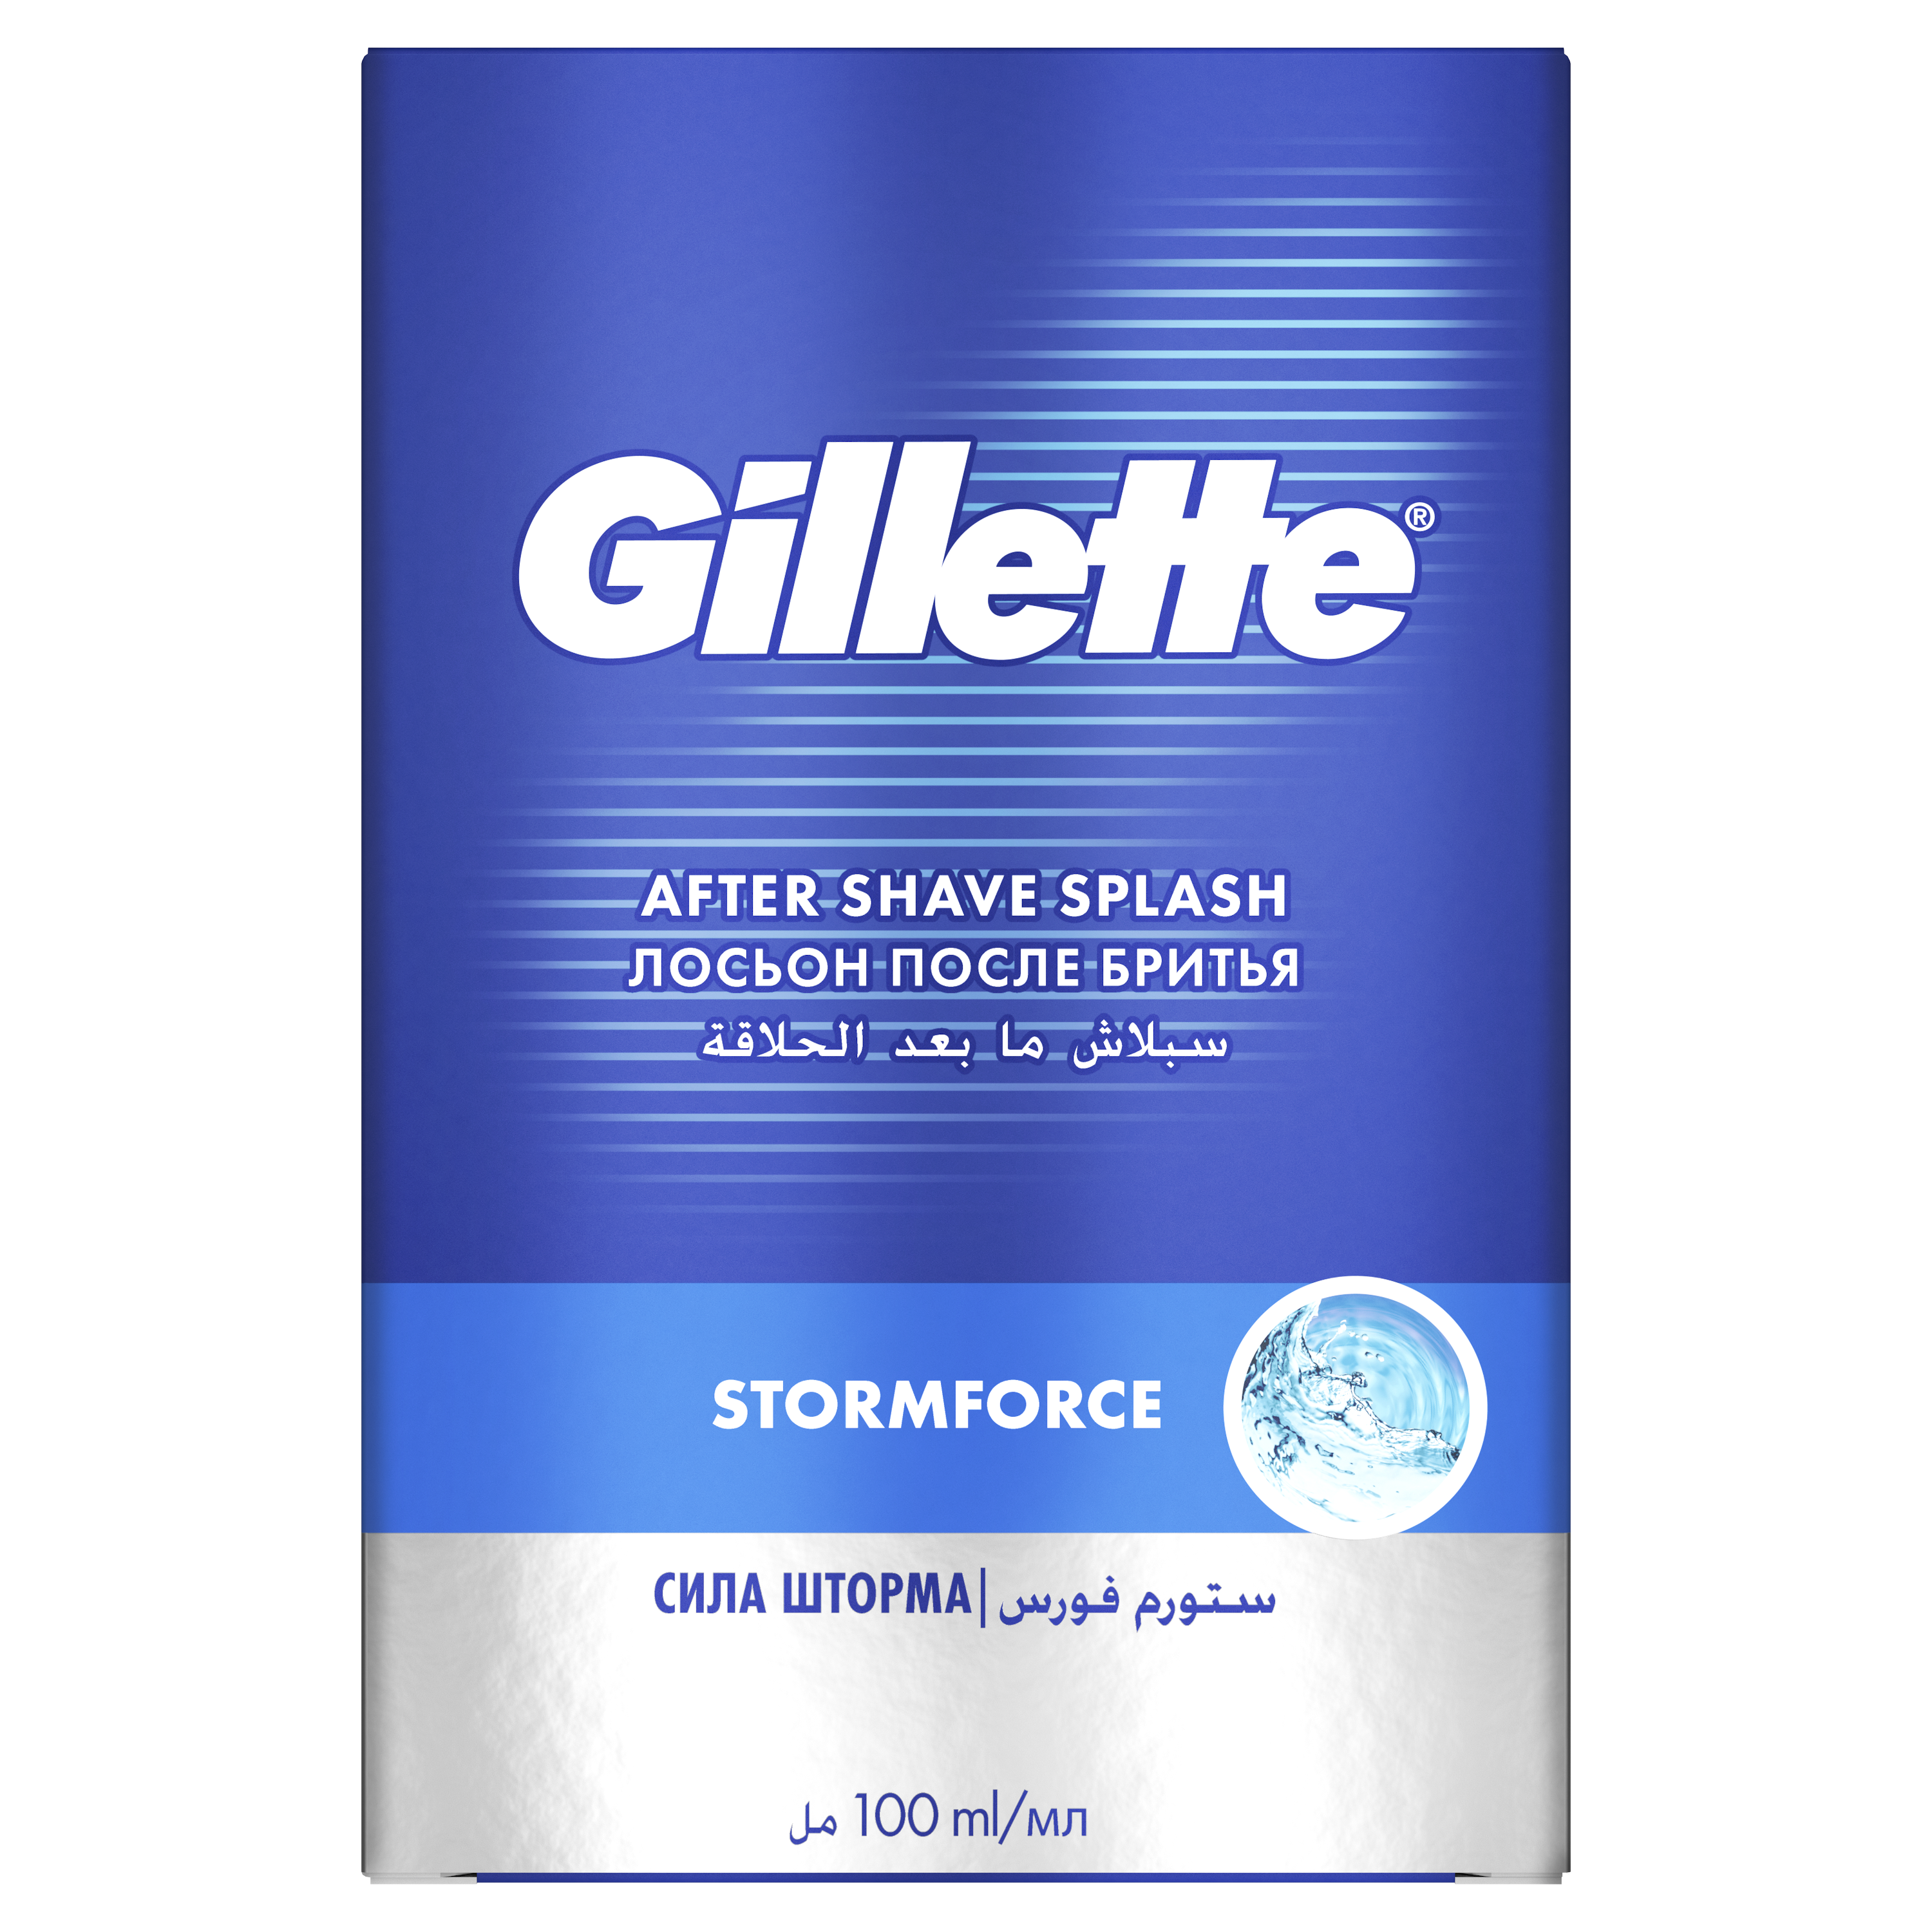 Лосьон после бритья Gillette Stormforce, 100 мл - фото 1